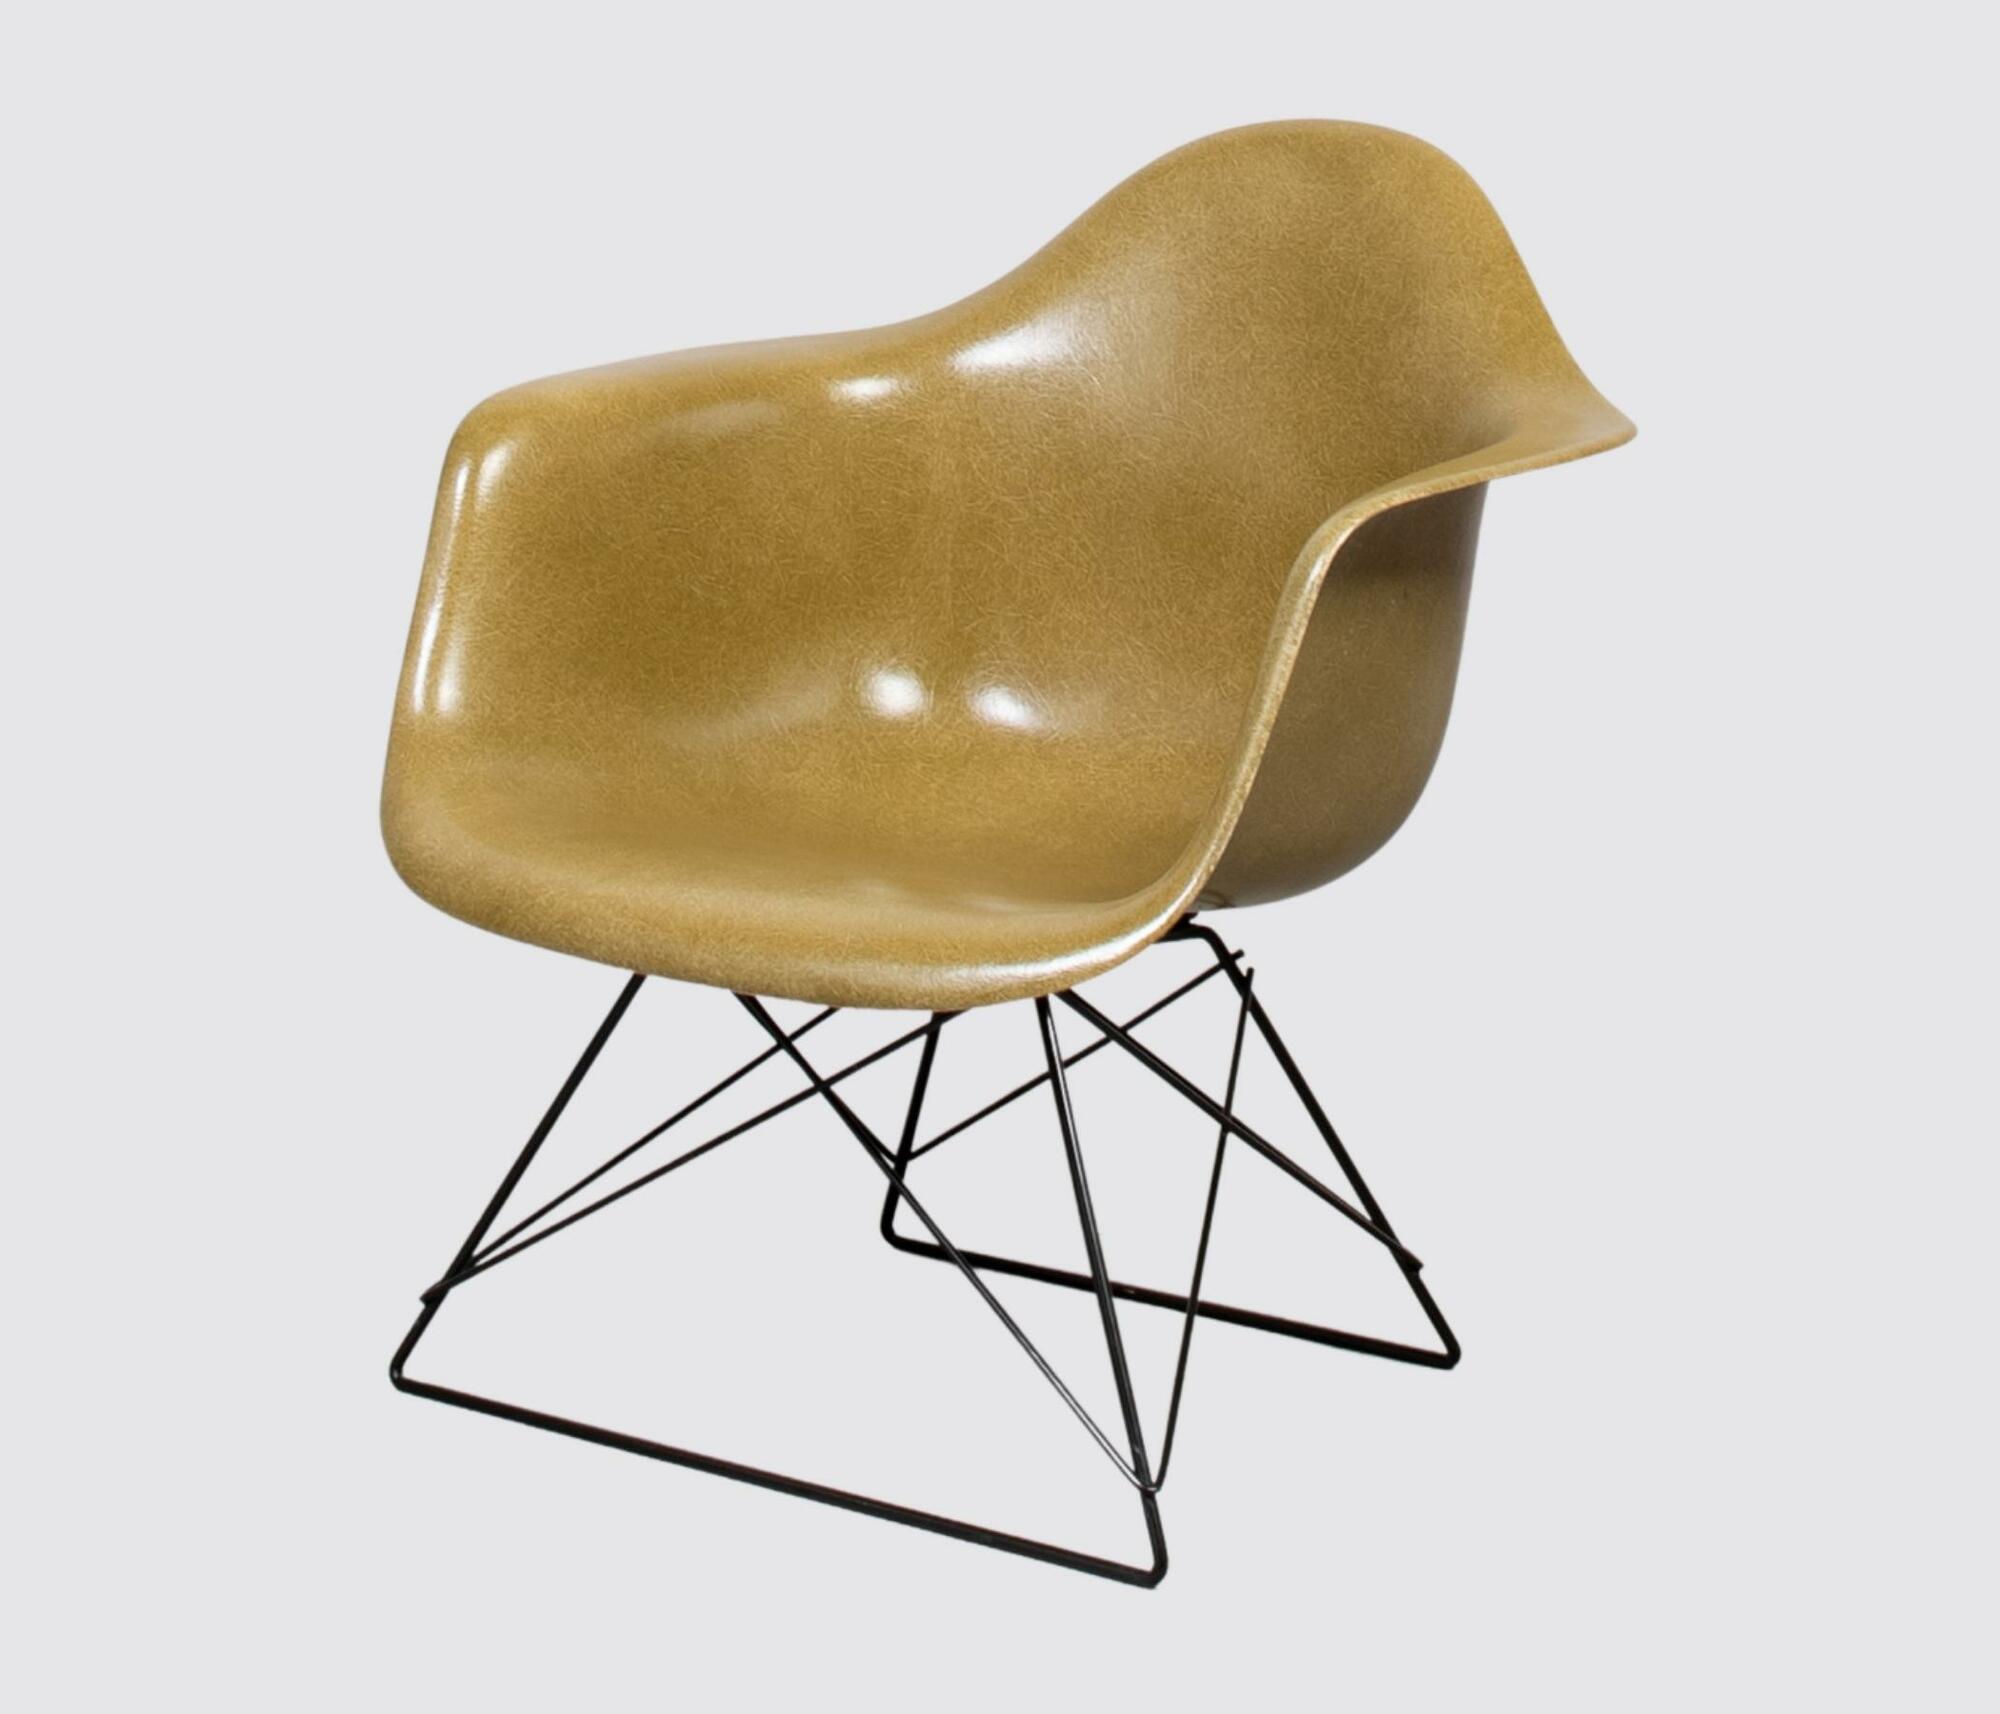 Eames Fiberglass LAR Chair by Herman Miller Khaki 0